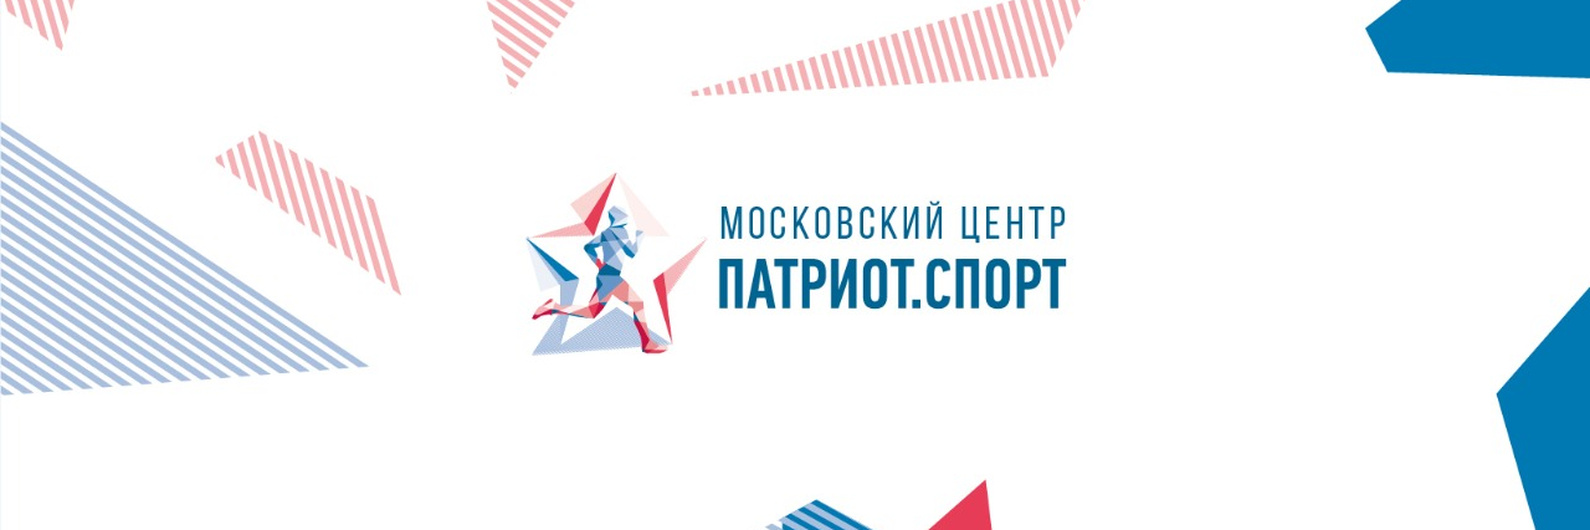 Известные спортсмены провели свыше 250 мастер-классов в образовательных учреждениях Москвы